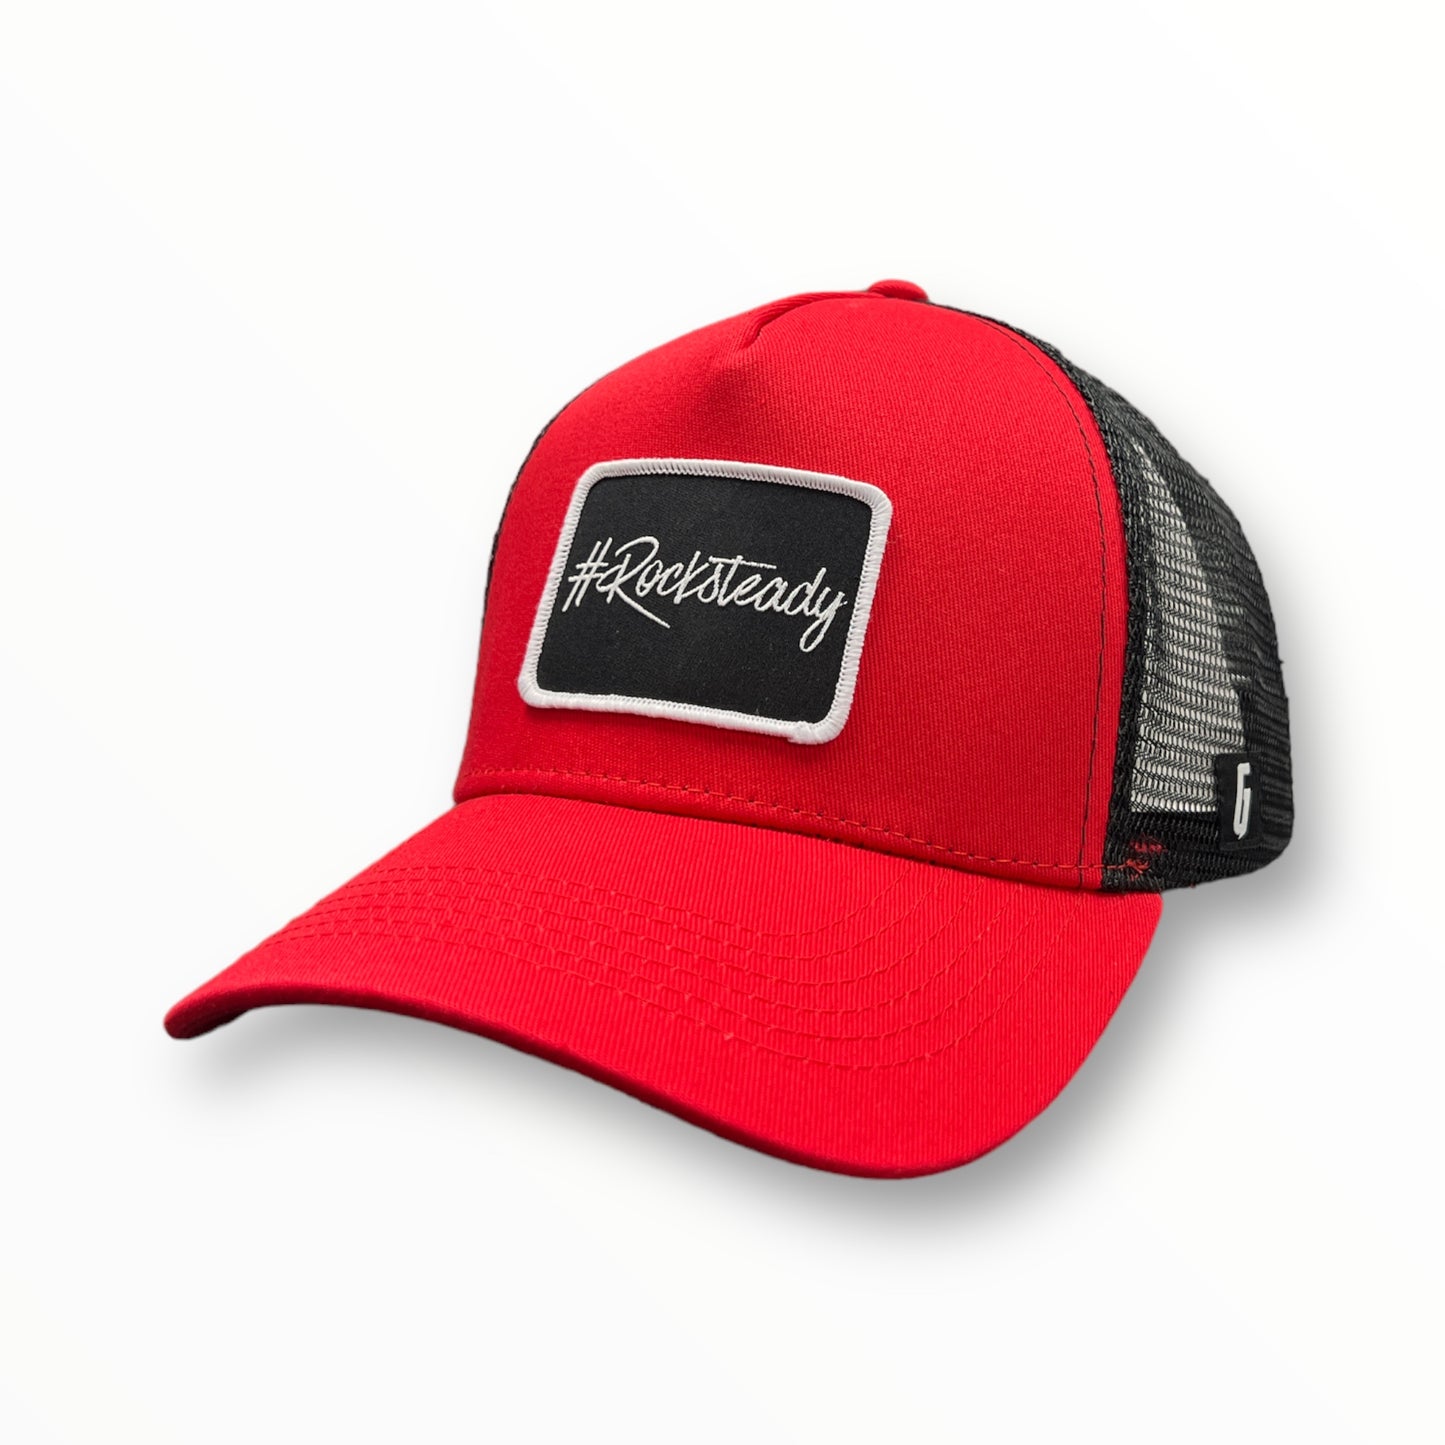 Rocksteady Trucker Hat